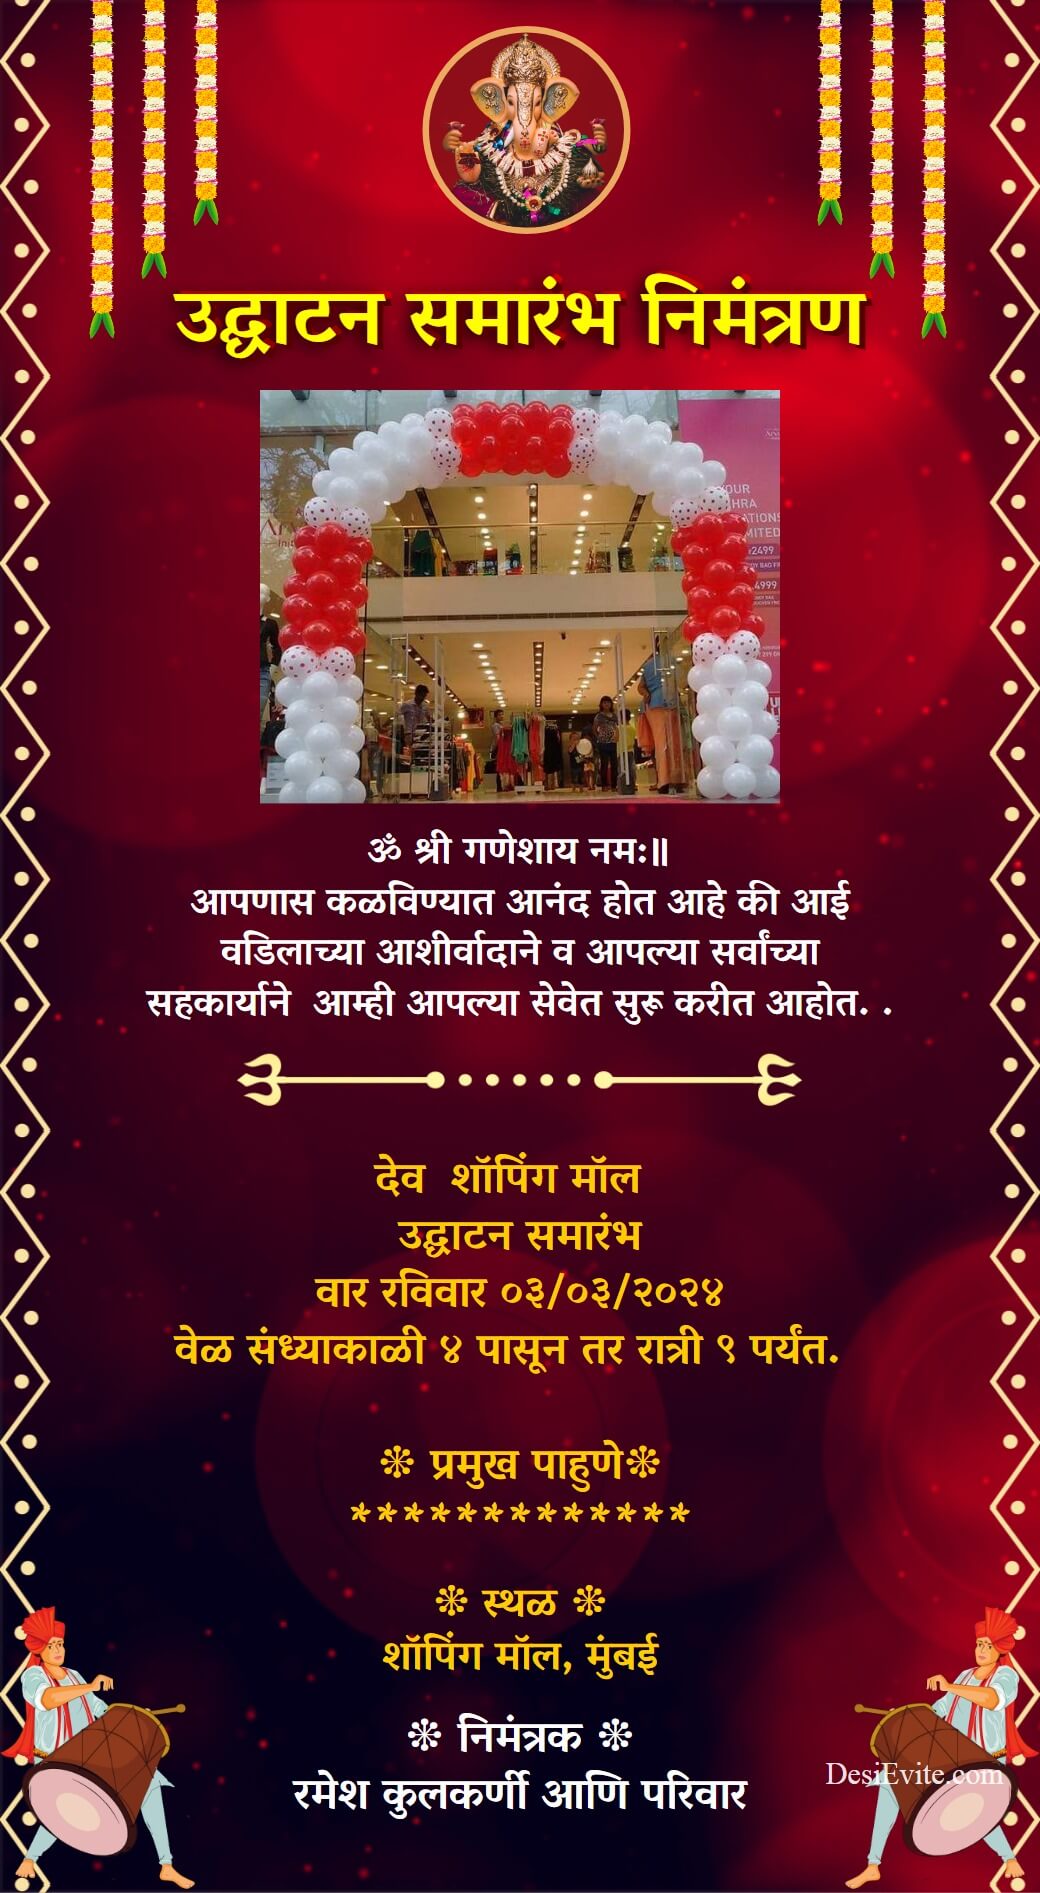 udghatan samarambh invitation card marathi template 151 